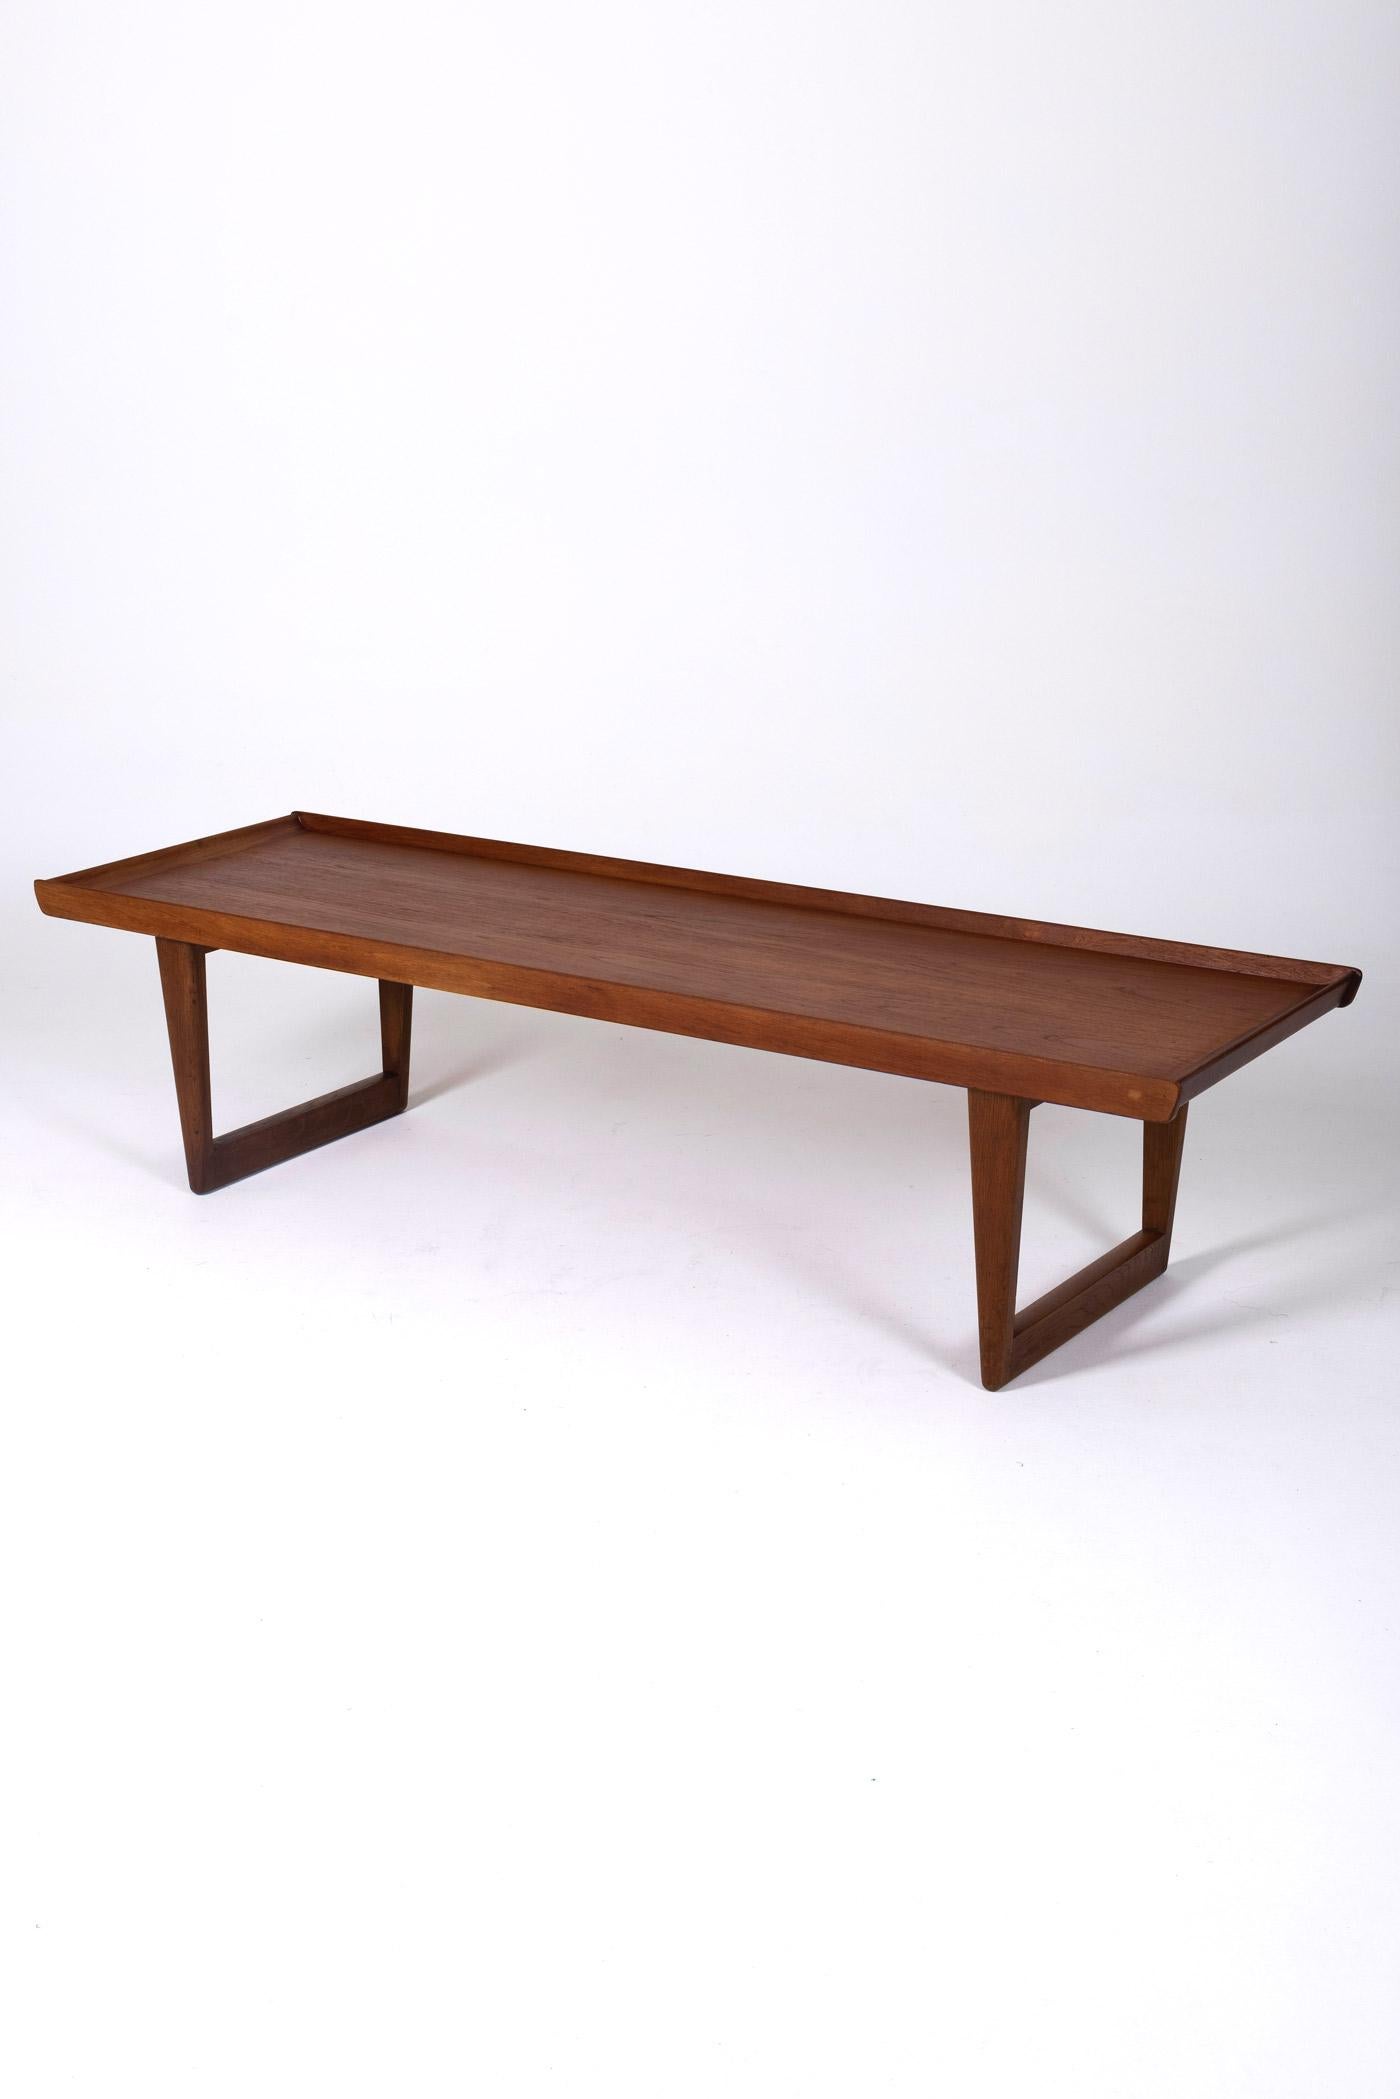 Table basse en bois attribuée au designer danois Børge Mogensen, datant des années 1950. Cette table basse ou table d'appoint est dotée d'un plateau et d'une base en teck massif. Il est en parfait état.
DV154